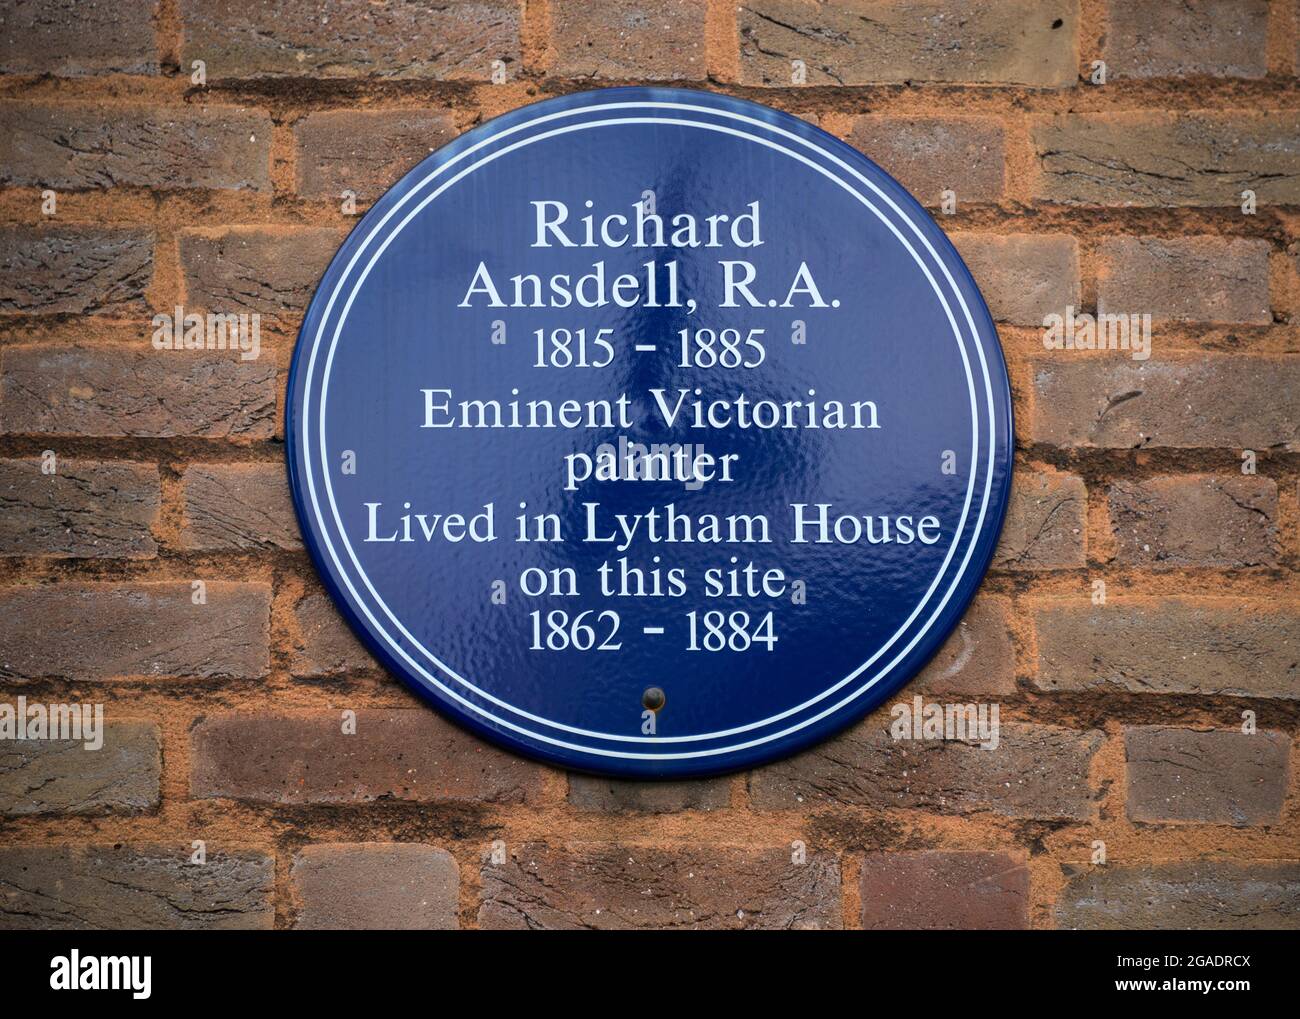 Richard Ansdell R.A., peintre victorien, plaque bleue, Londres Banque D'Images